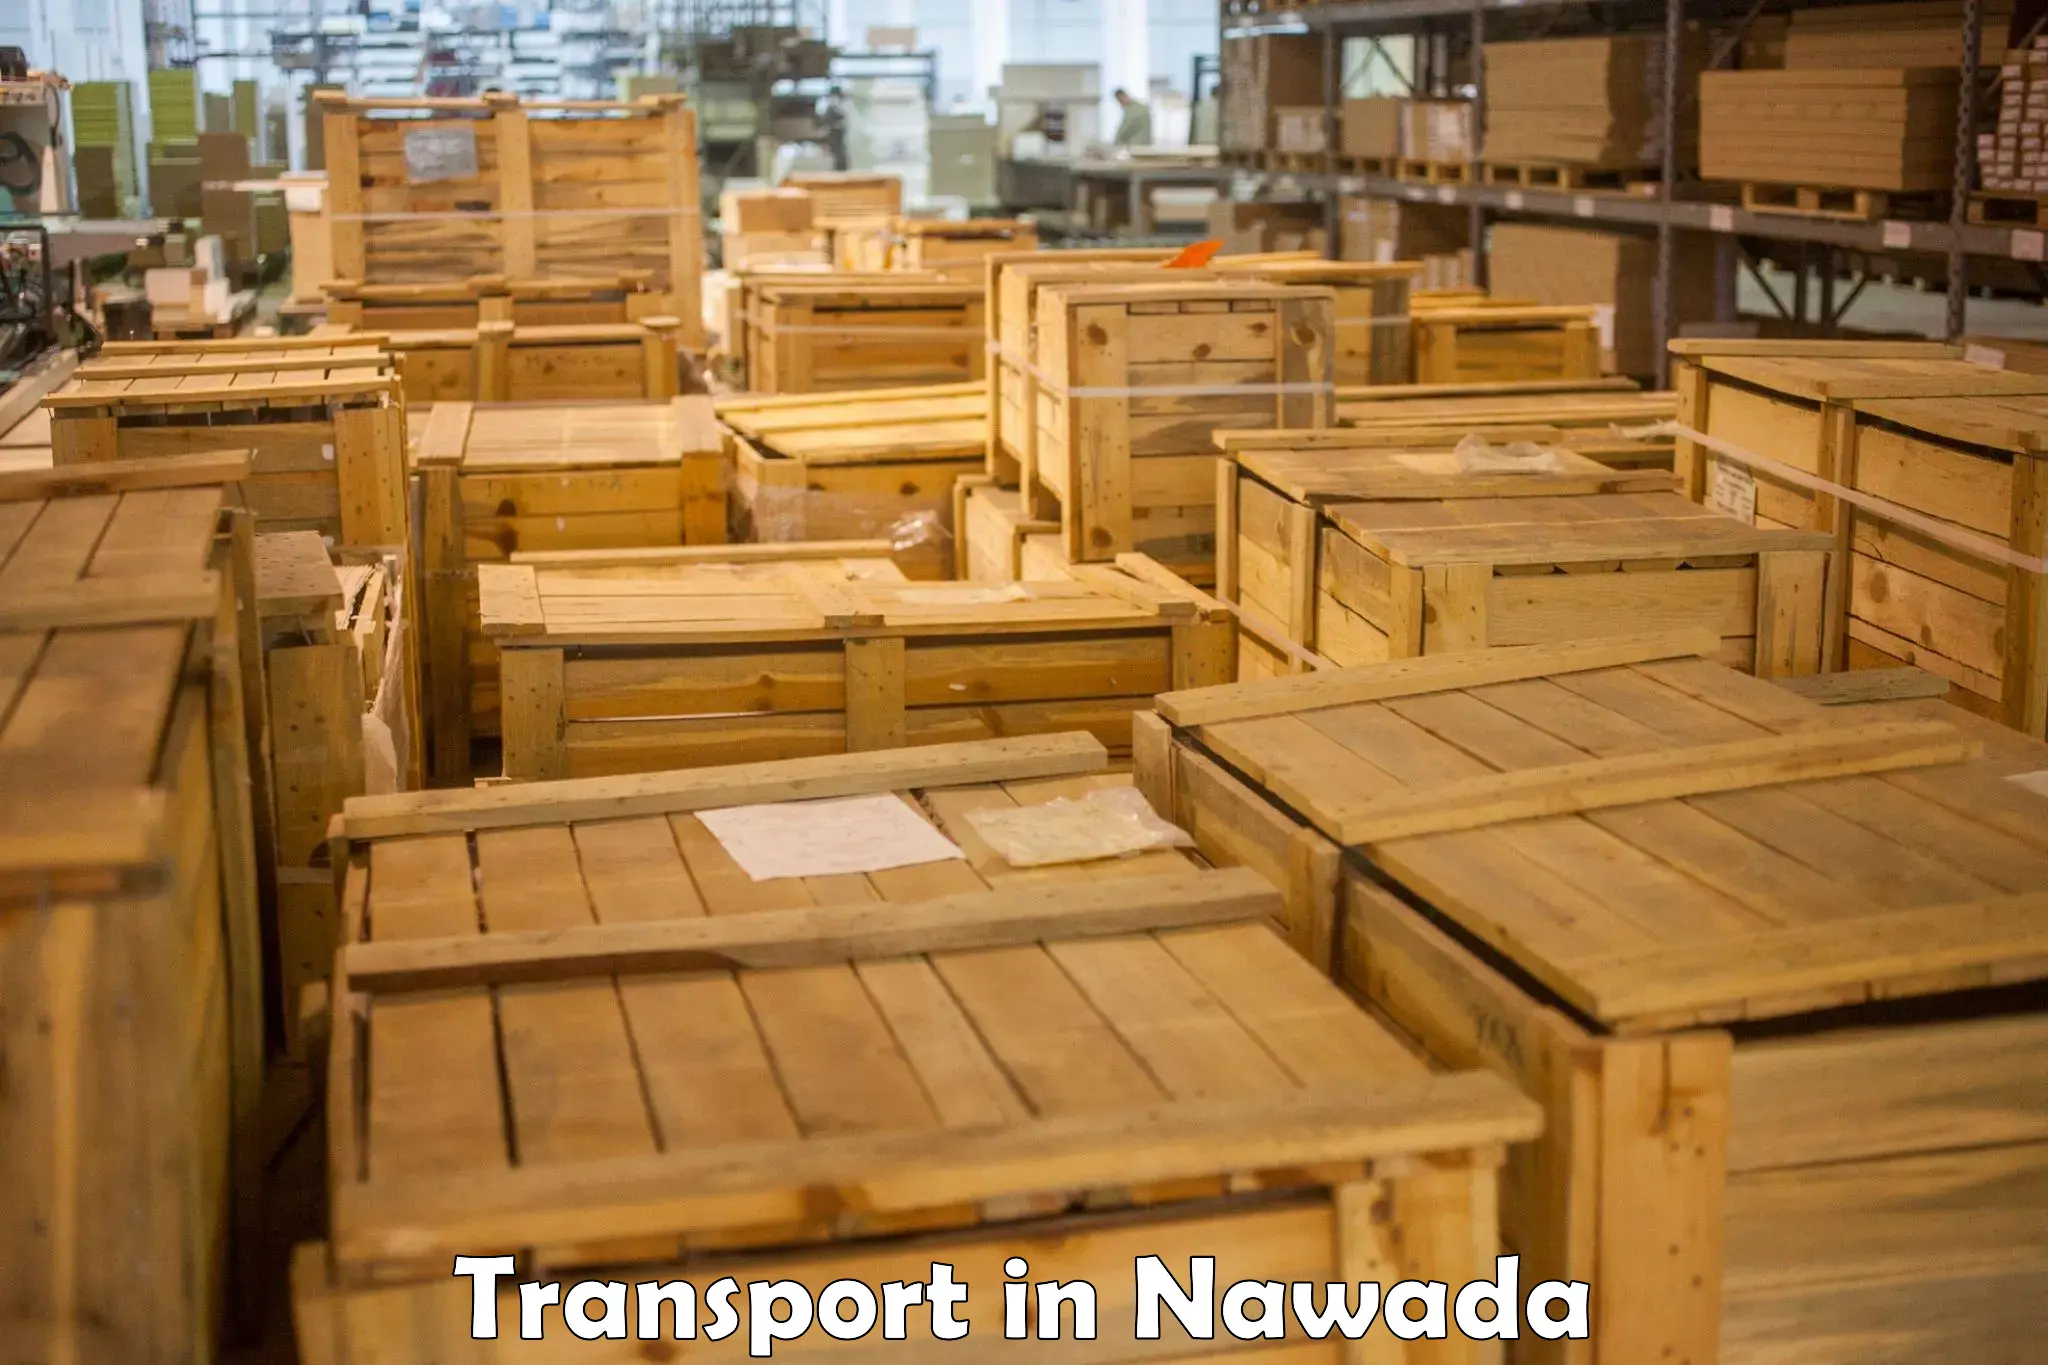 Furniture transport service in Nawada